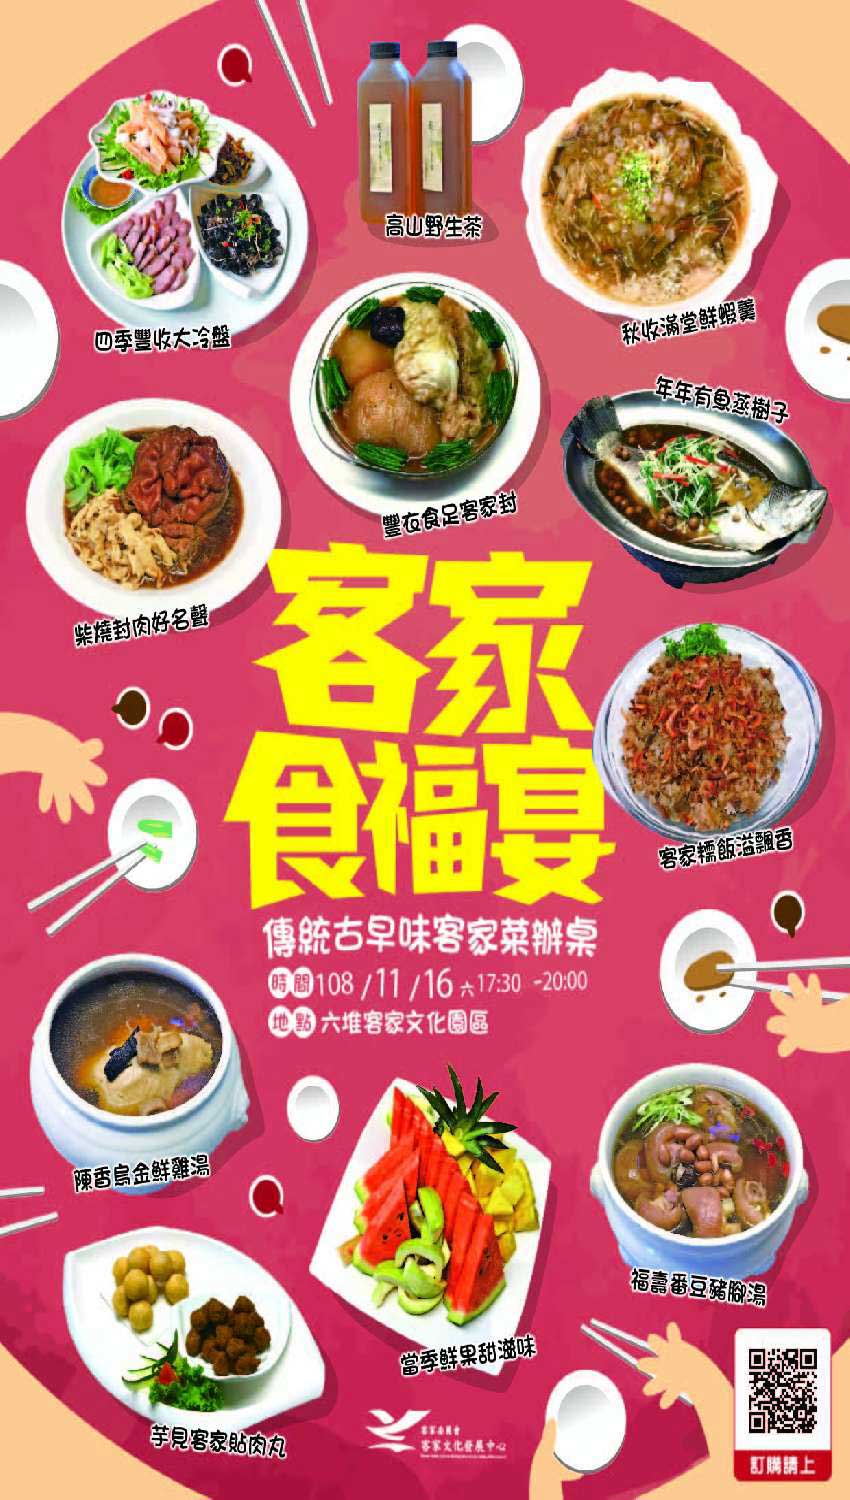 (Poster of Hakka Food Feast)